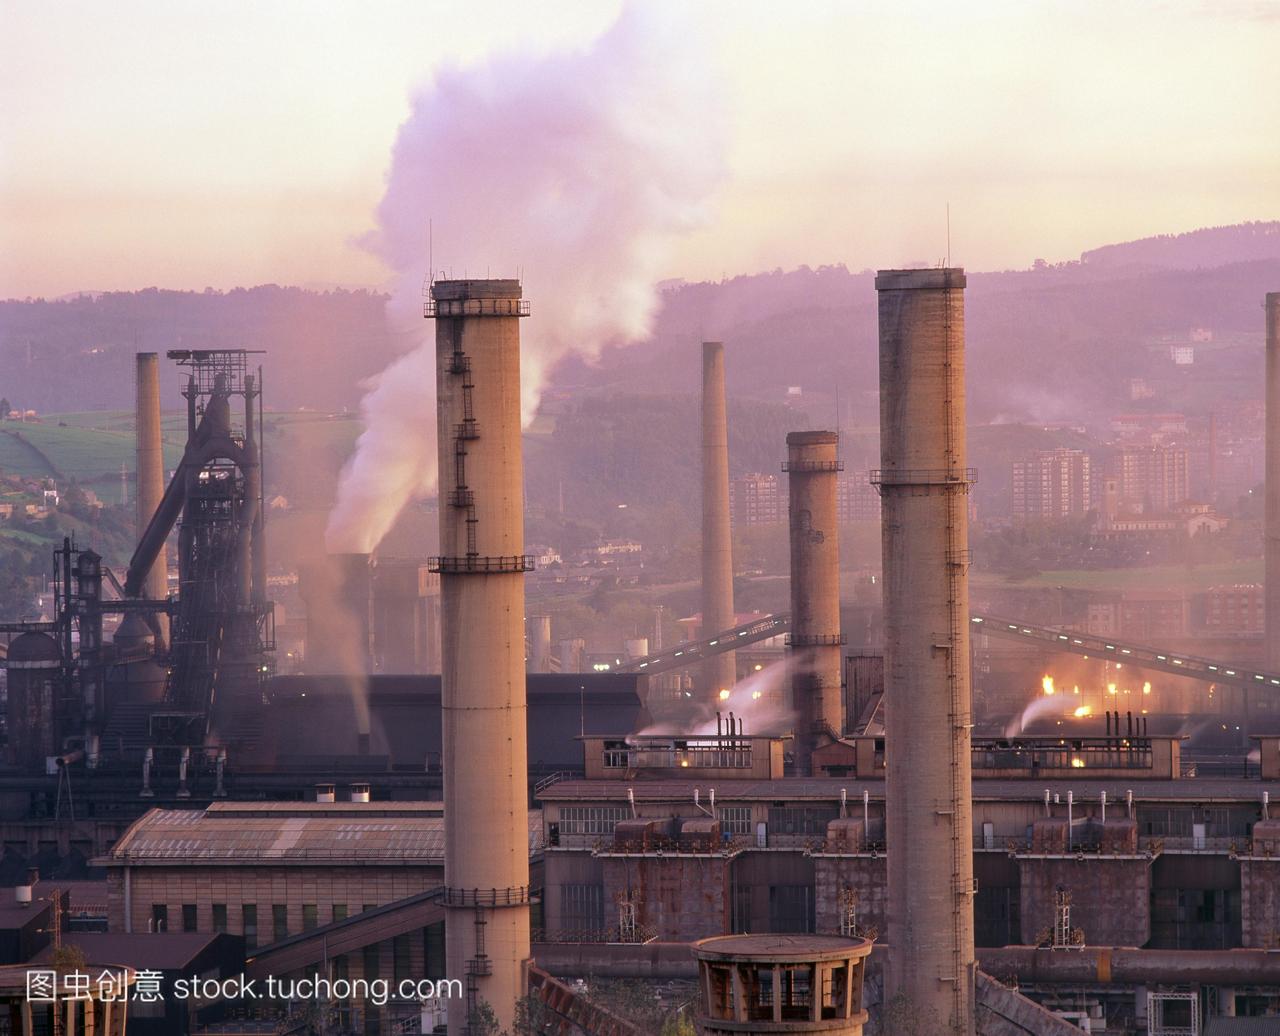 工业空气污染。钢厂的烟囱附近产生烟雾铁砧西